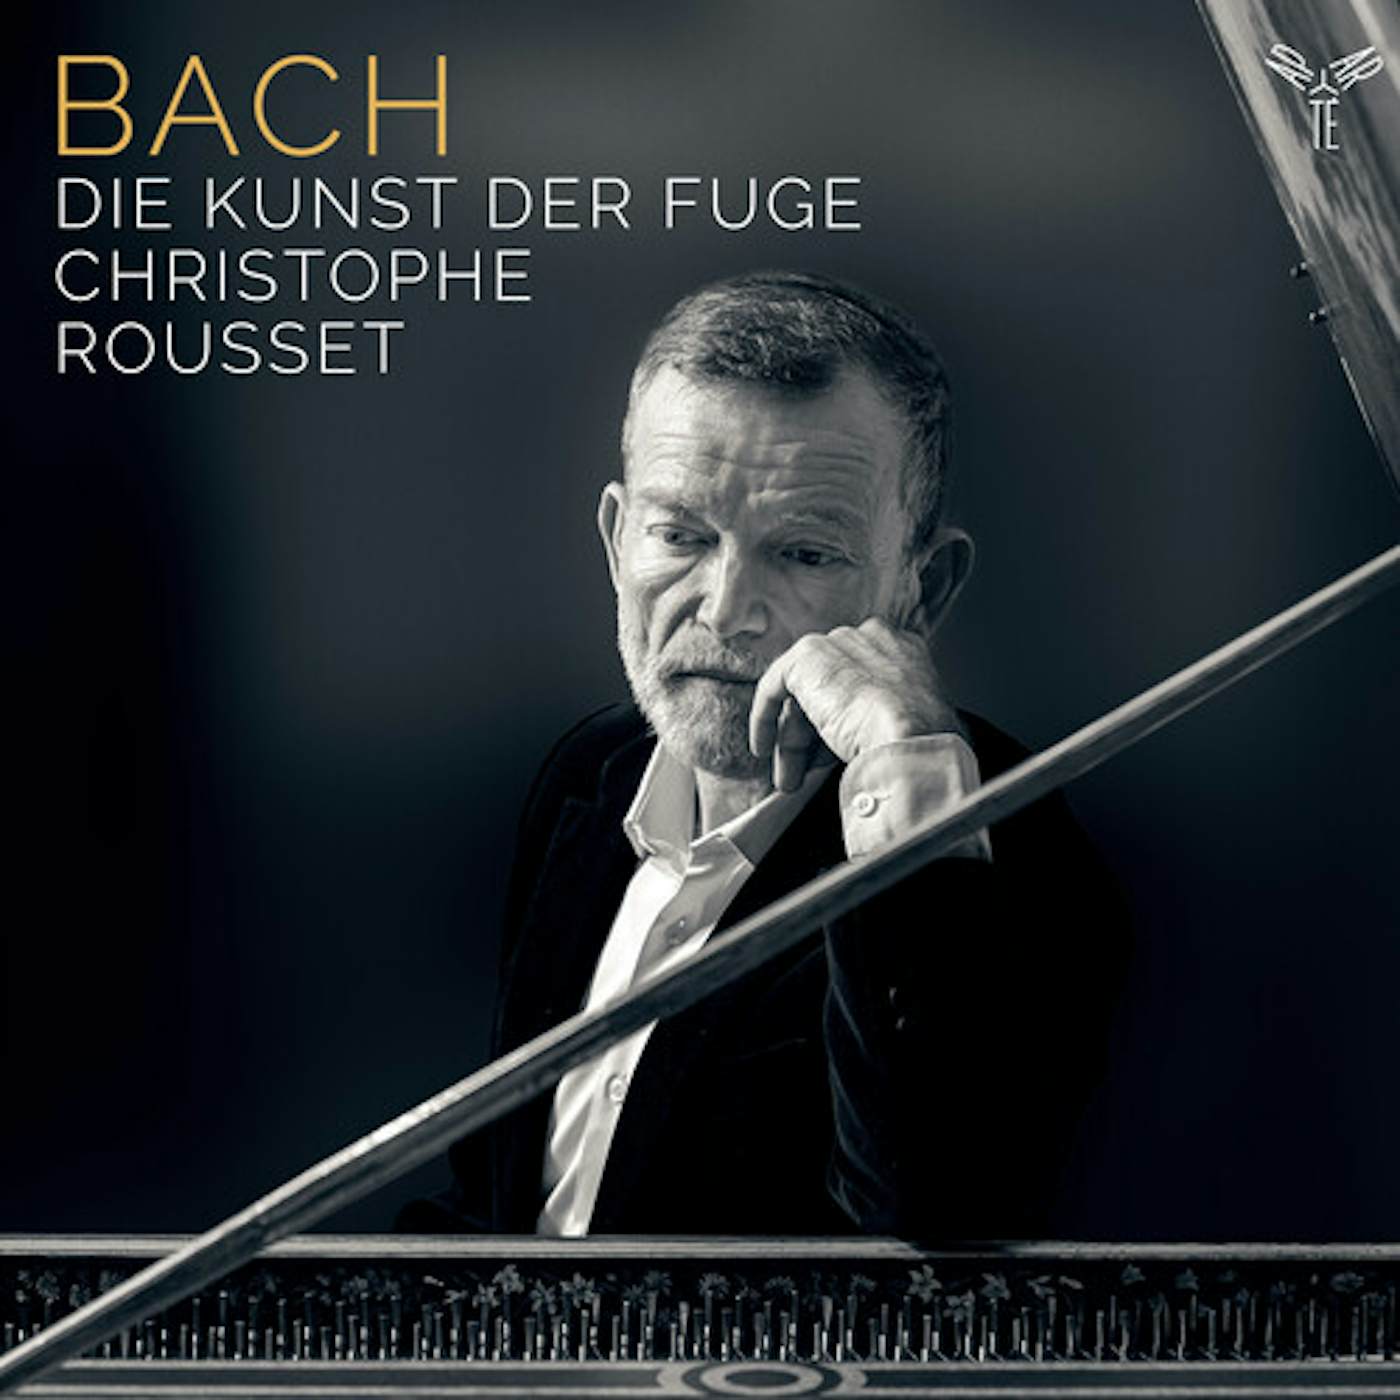 Christophe Rousset BACH: DIE KUNST DER FUGE BWV 1080 CD